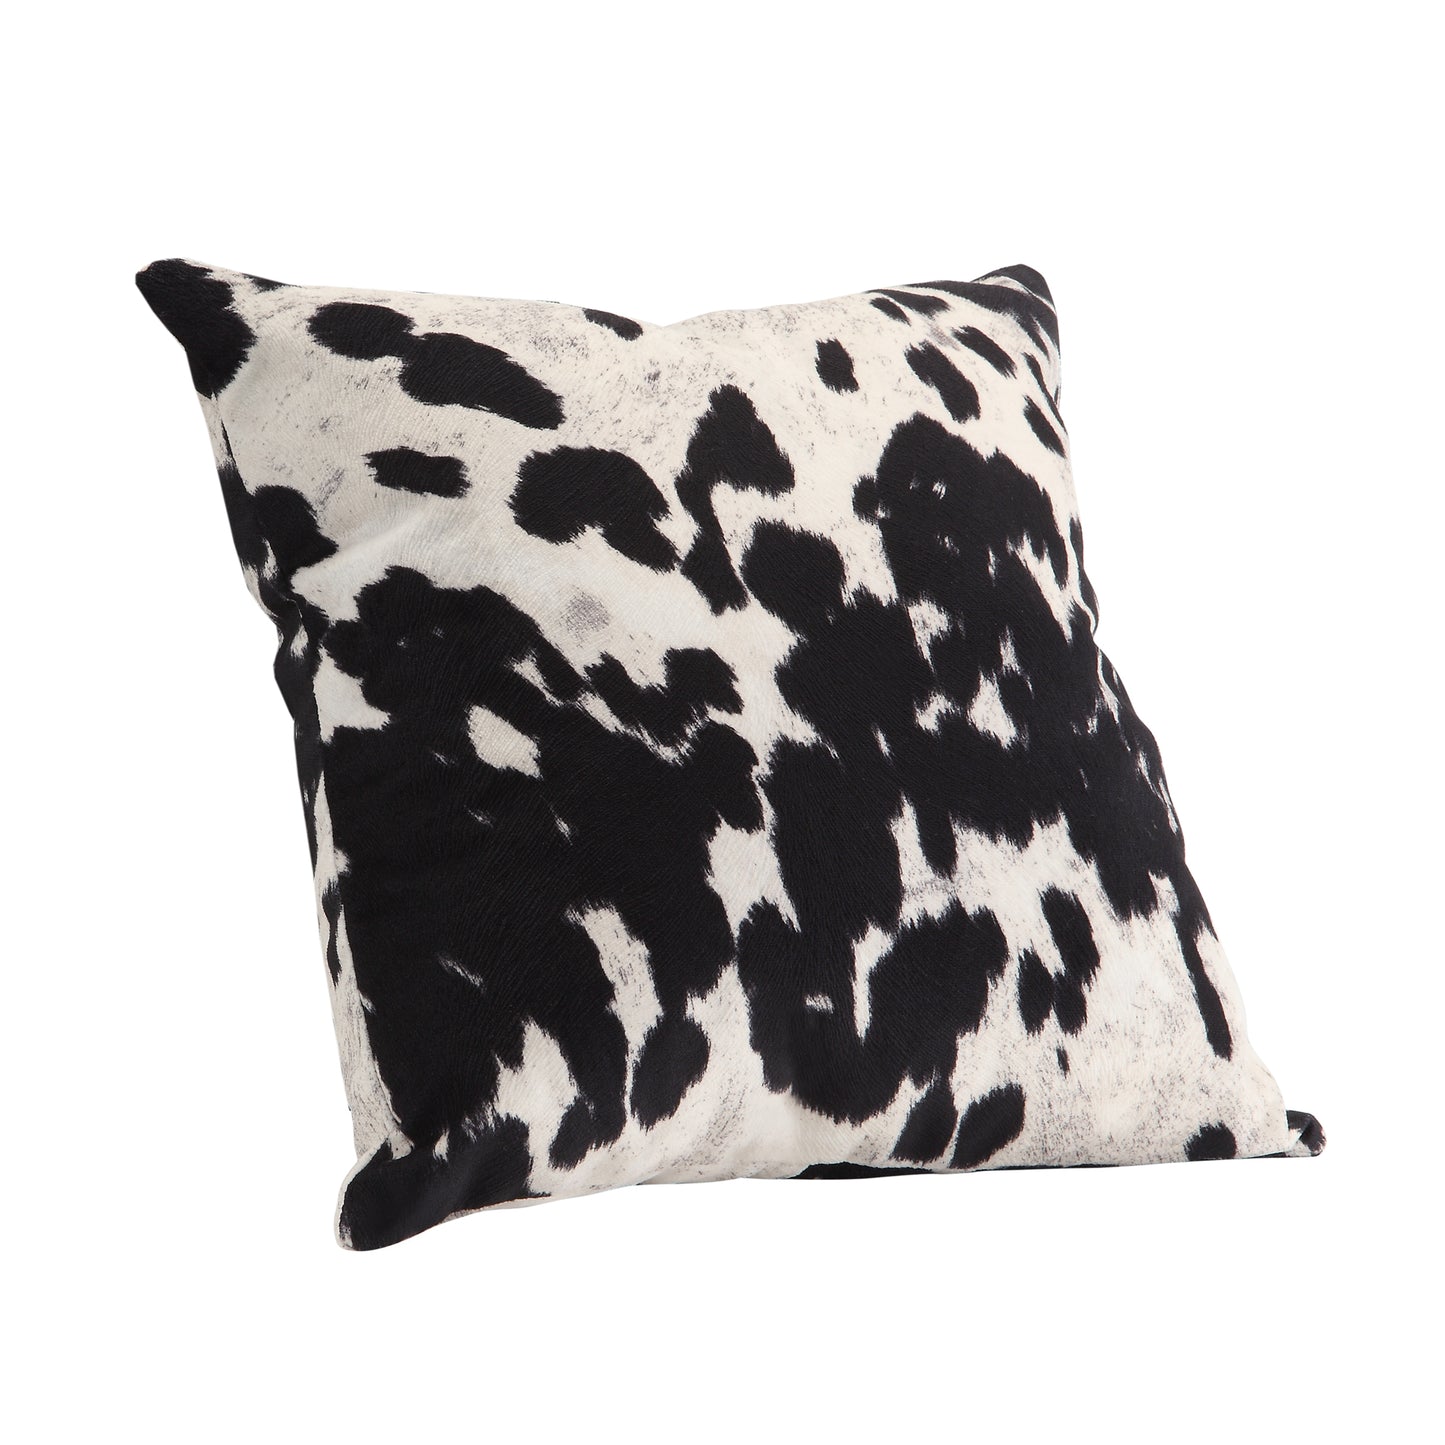 Faux Cowhide Print Accent Pillows (Set of 2) - Black Cowhide